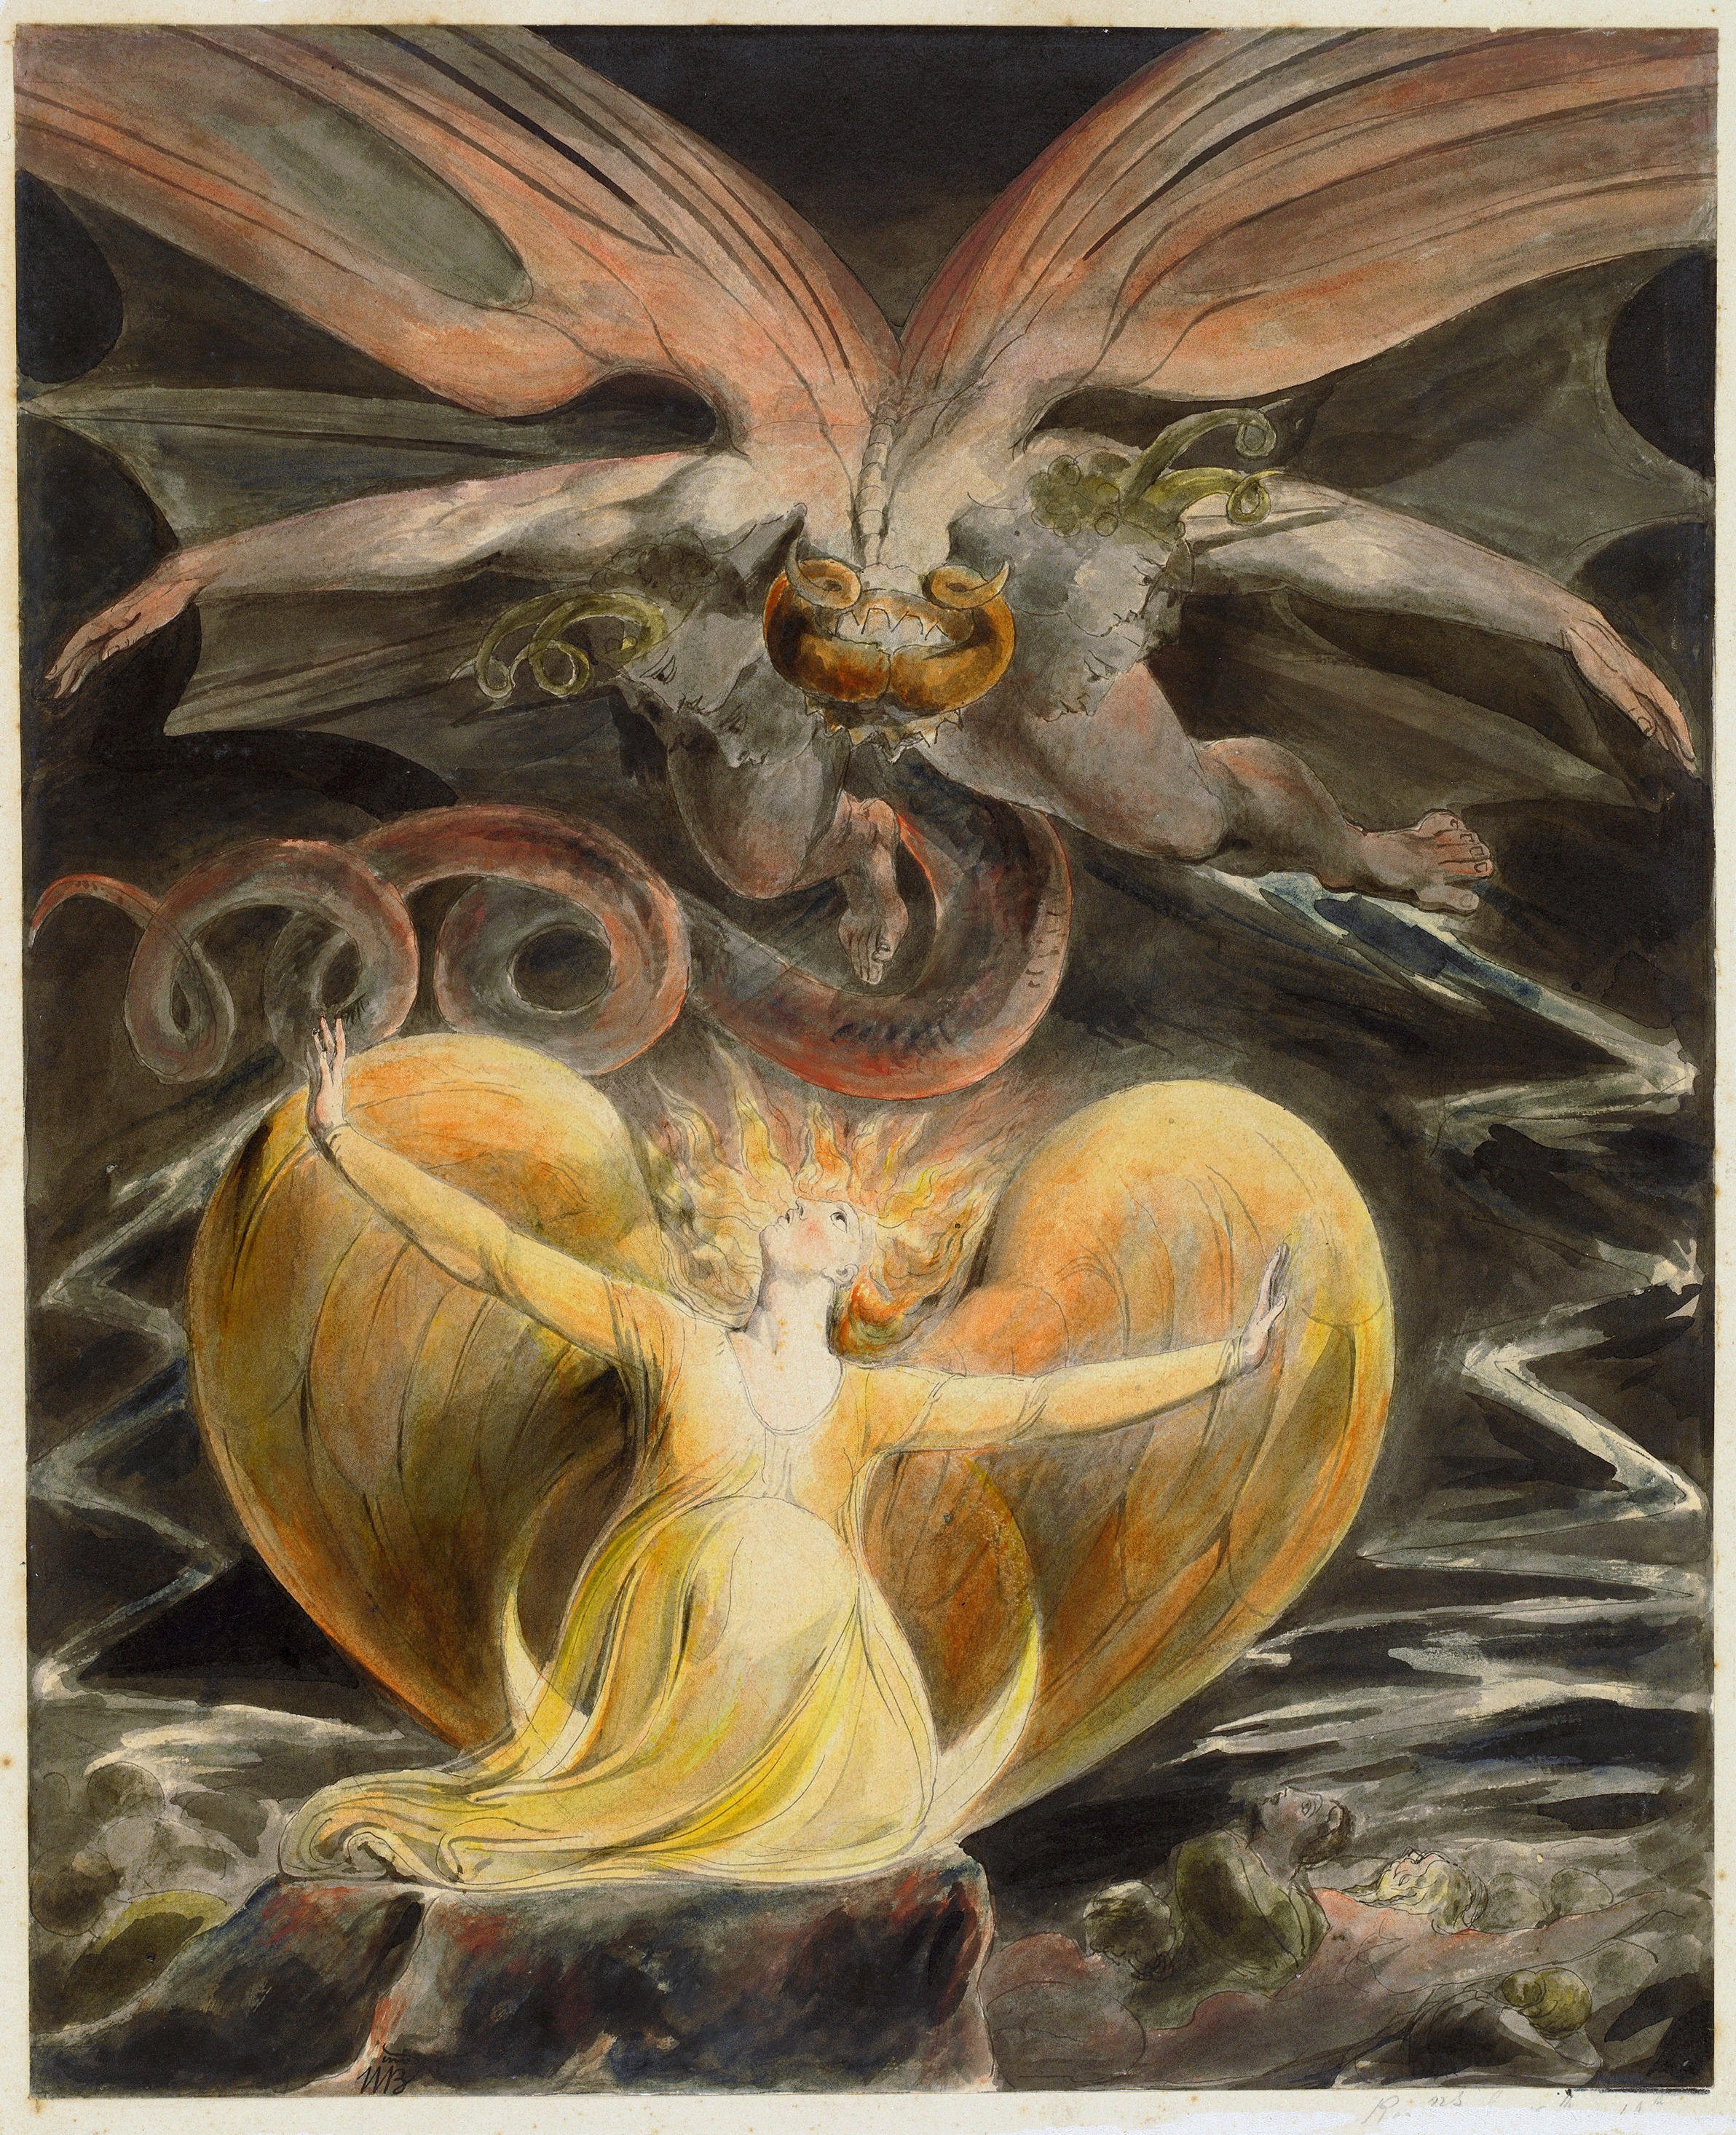 巨大な赤い龍と太陽の衣をまとった女 by William Blake - 1805年頃 - 43.7 x 34.8 cm 